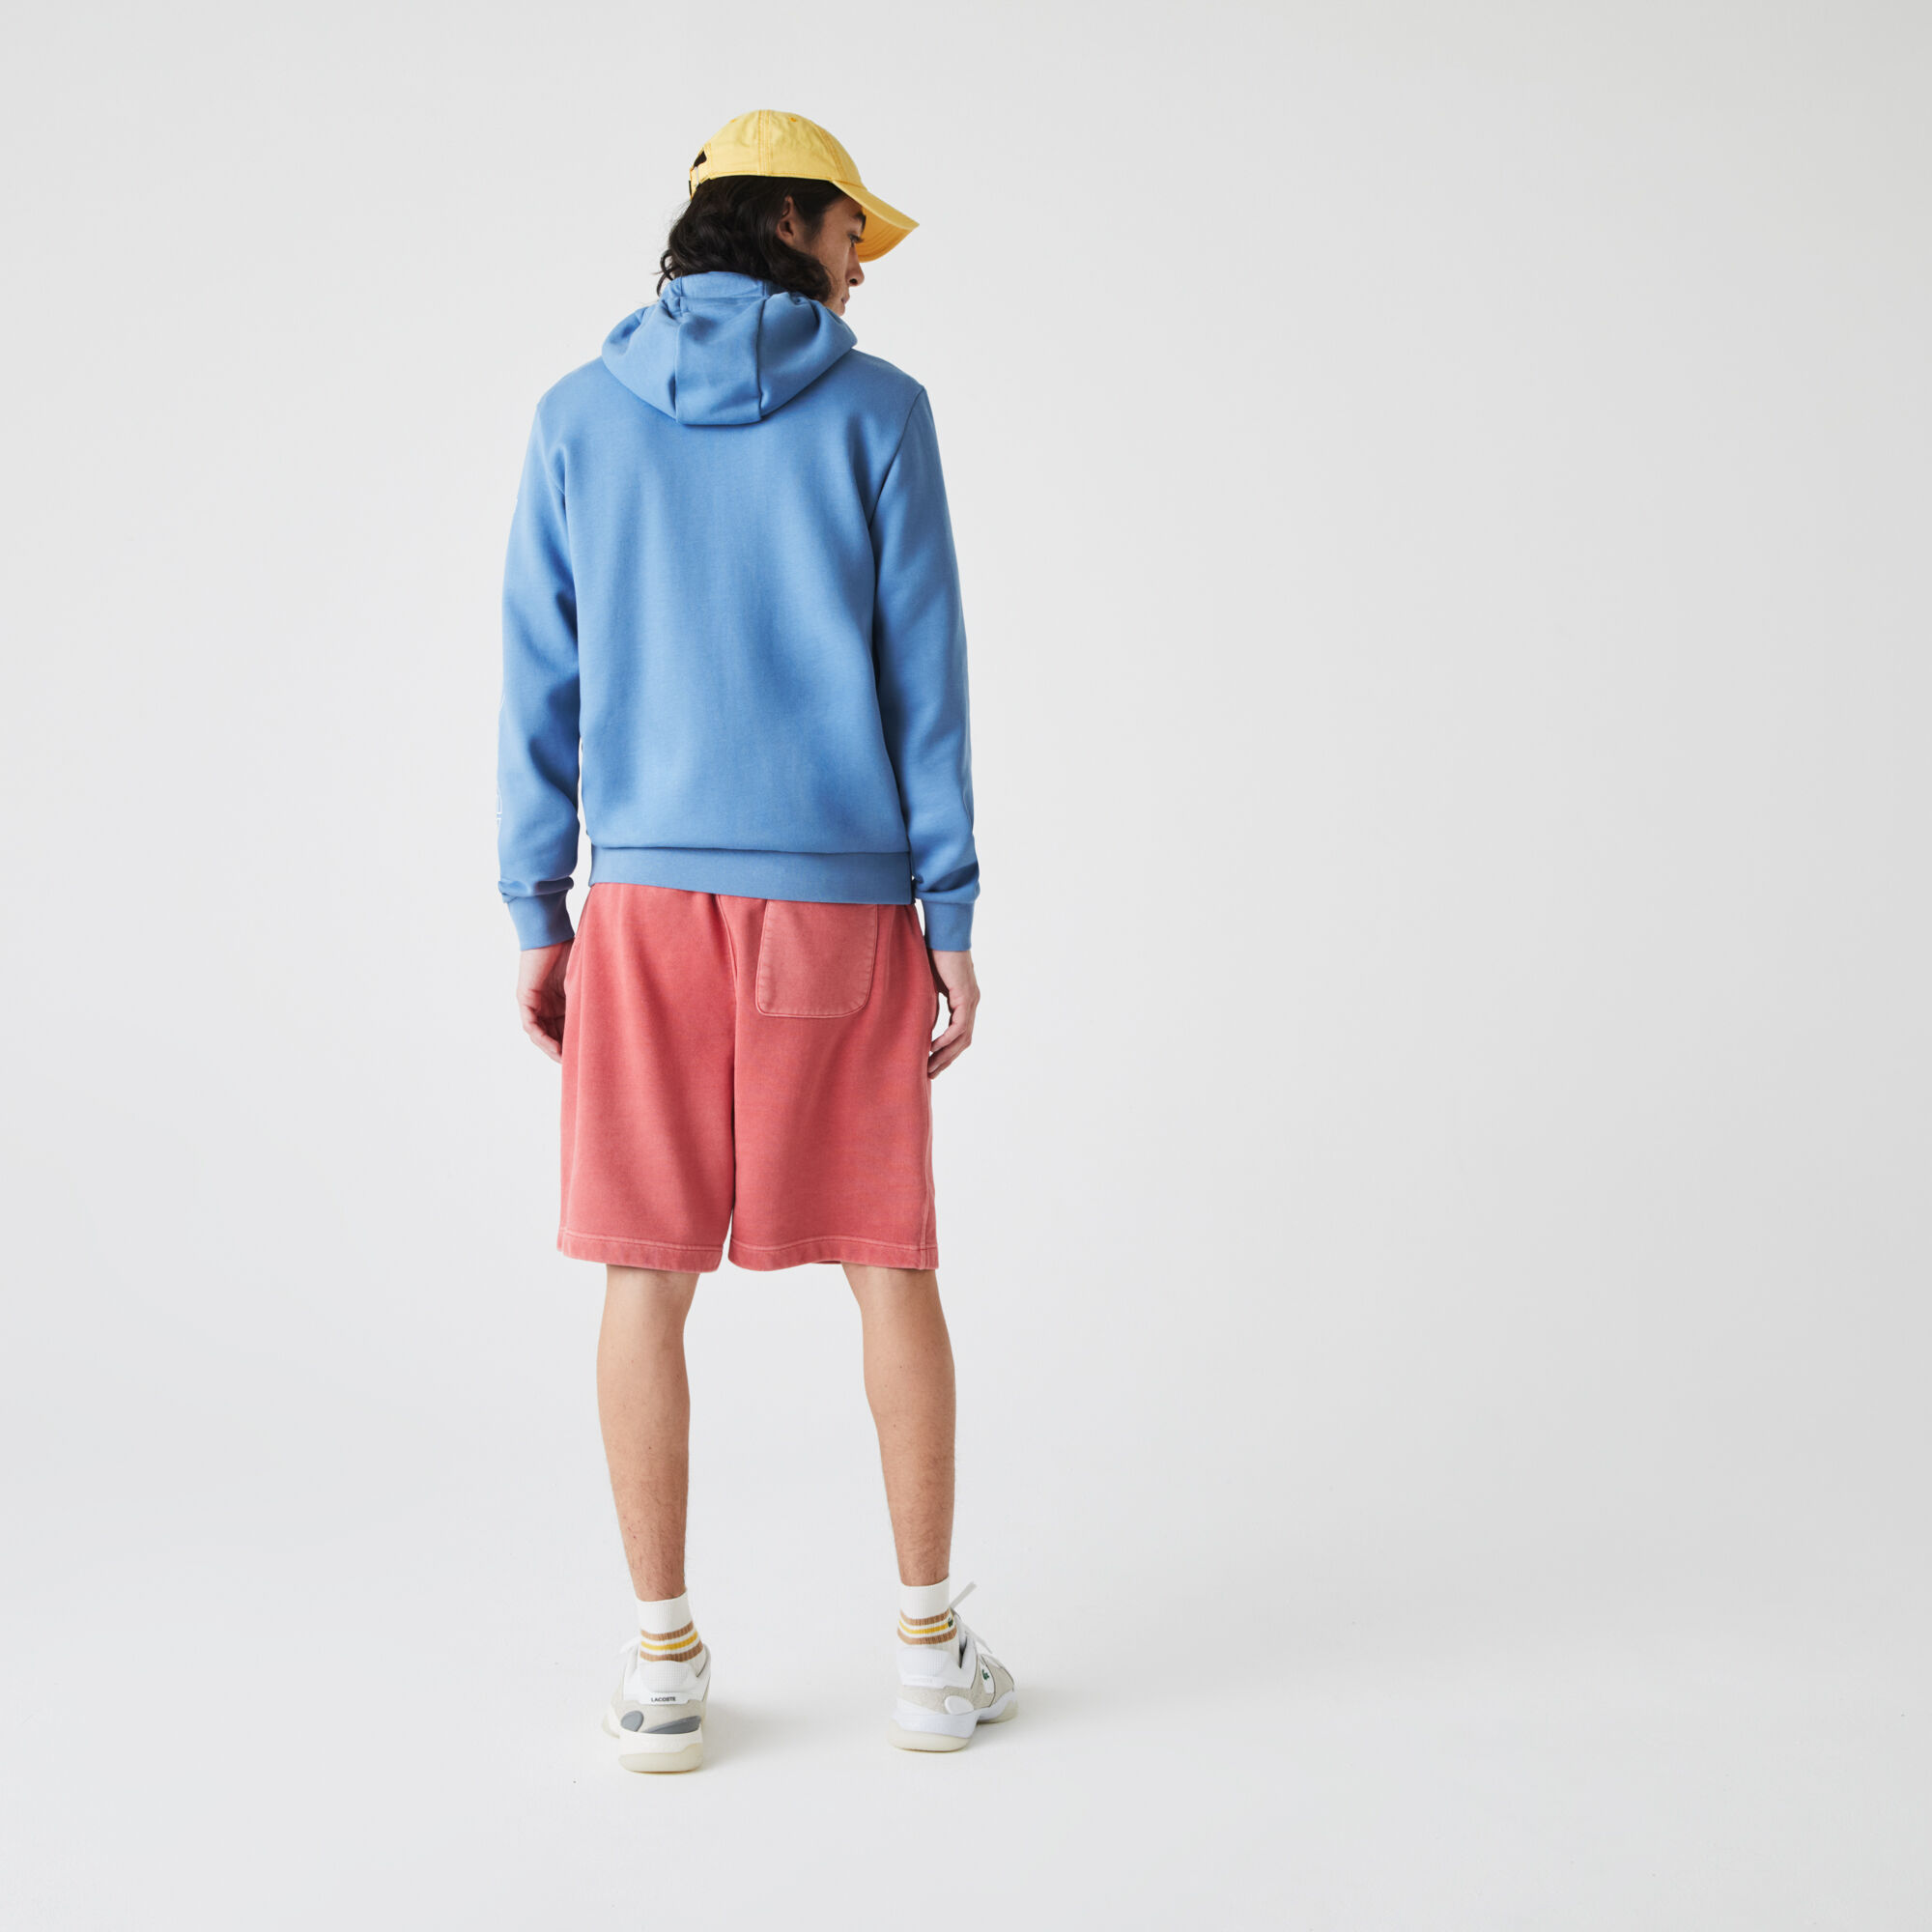 Men’s Hooded Colorblock Fleece Zip Sweatshirt